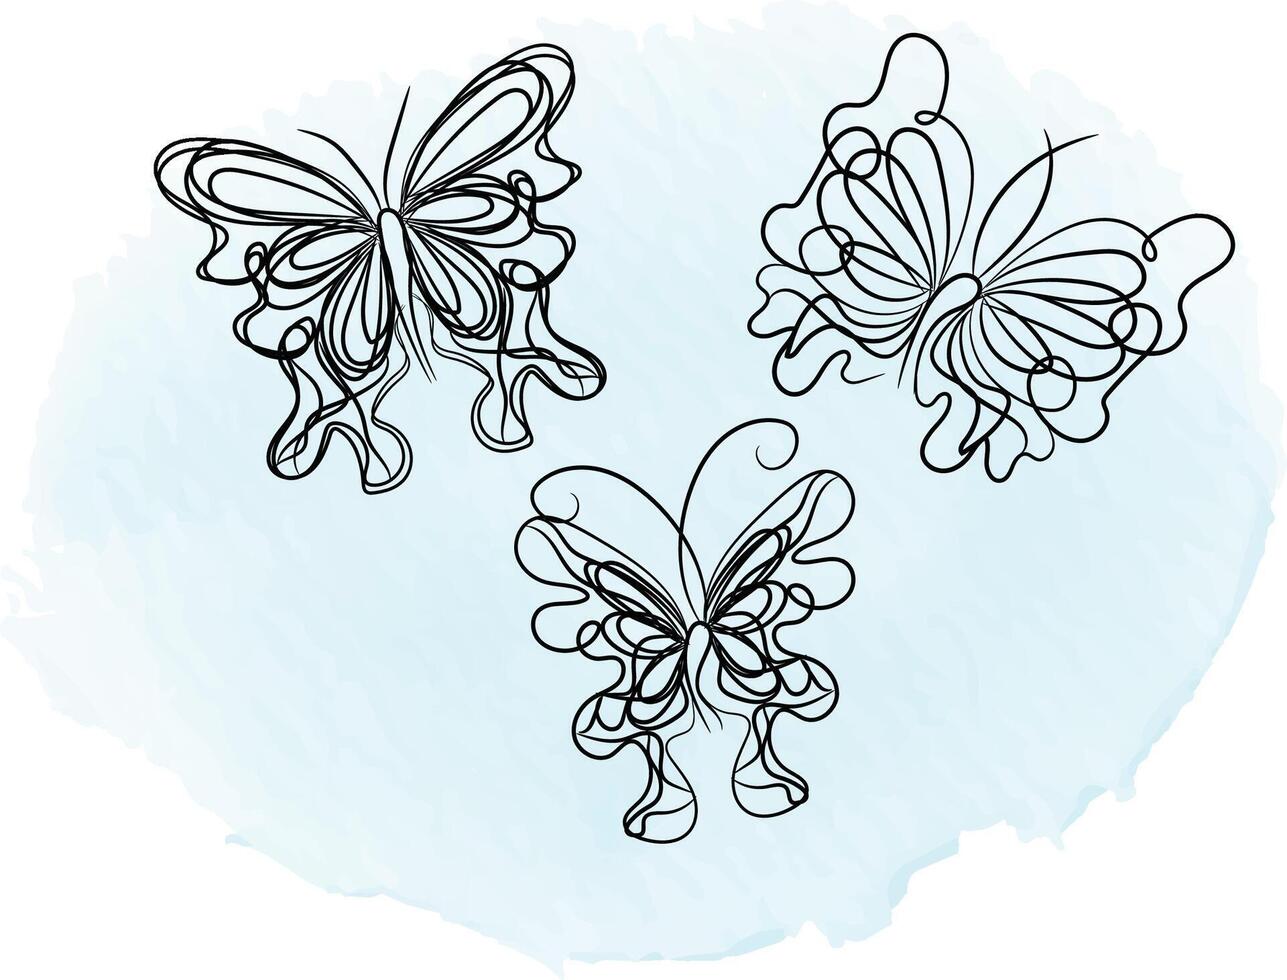 contour de papillon avec collection de détails dessinés vecteur